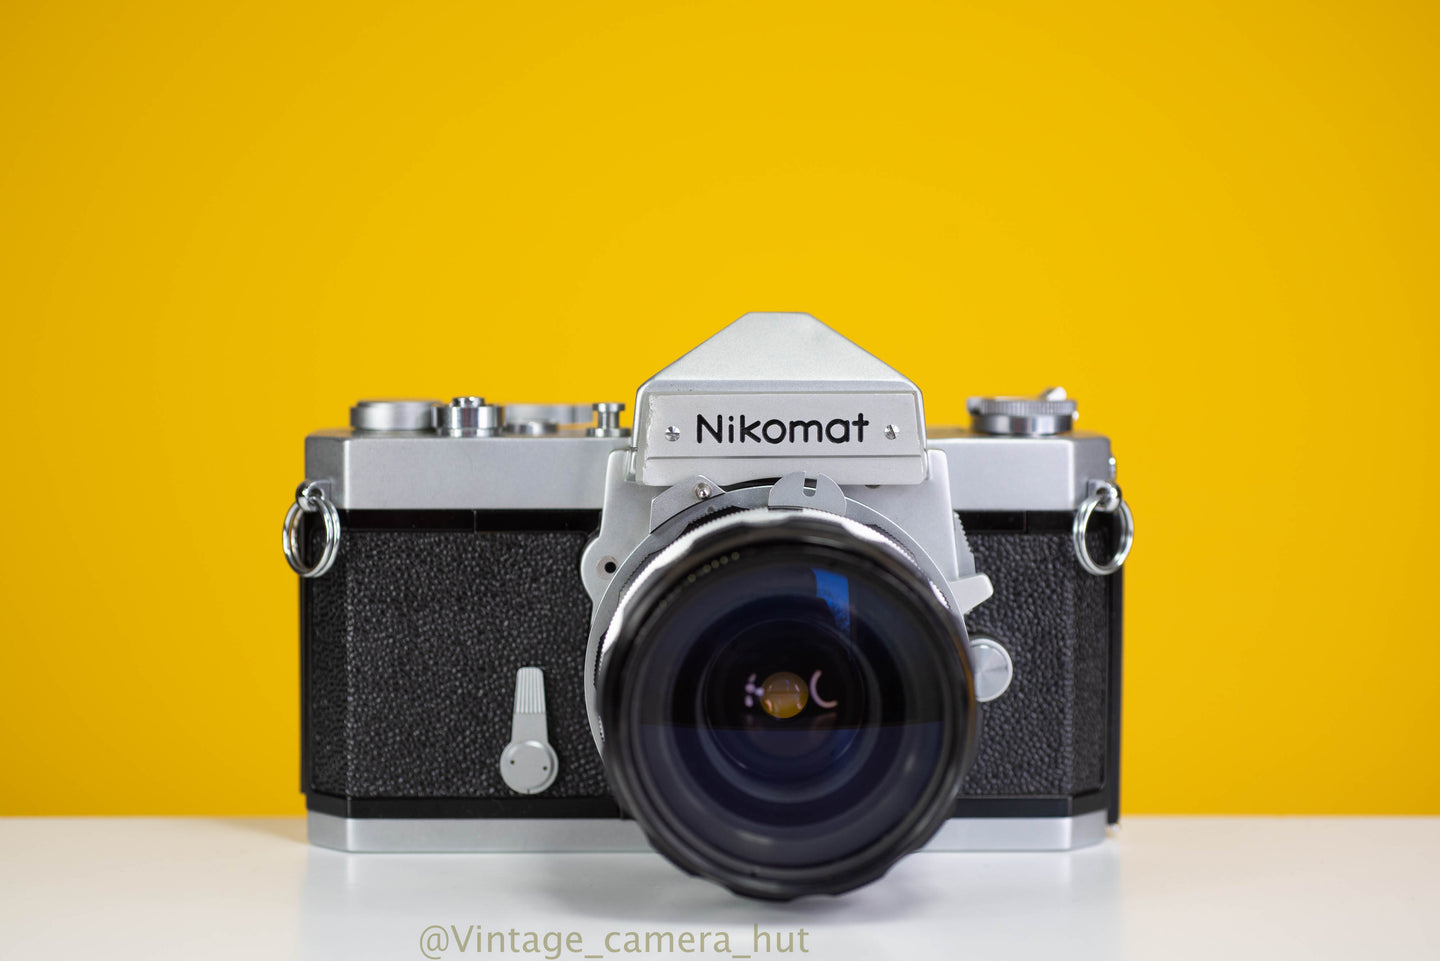 Nikkormat FTN 35mm Film Camera with Nikkor 28mm f/3.5 Lens